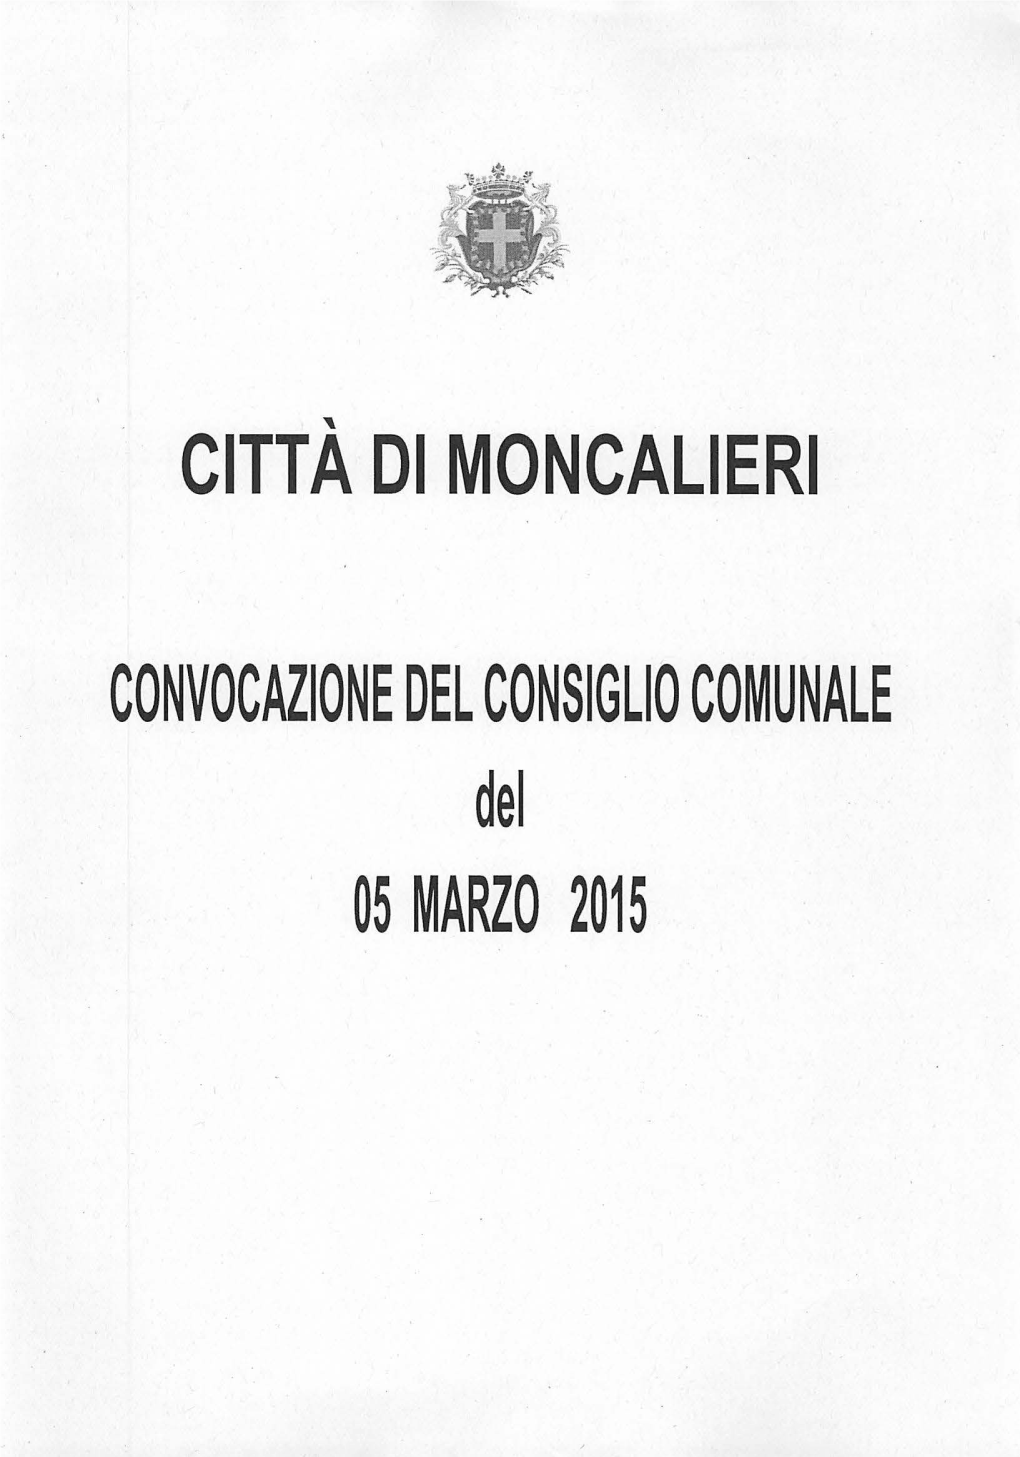 CONVOCAZIONE DEL CONSIGLIO COMUNALE Del 05 MARZO 2015 CITTÀ DI MONCALIERI Servizio Segreteria Generale Tel